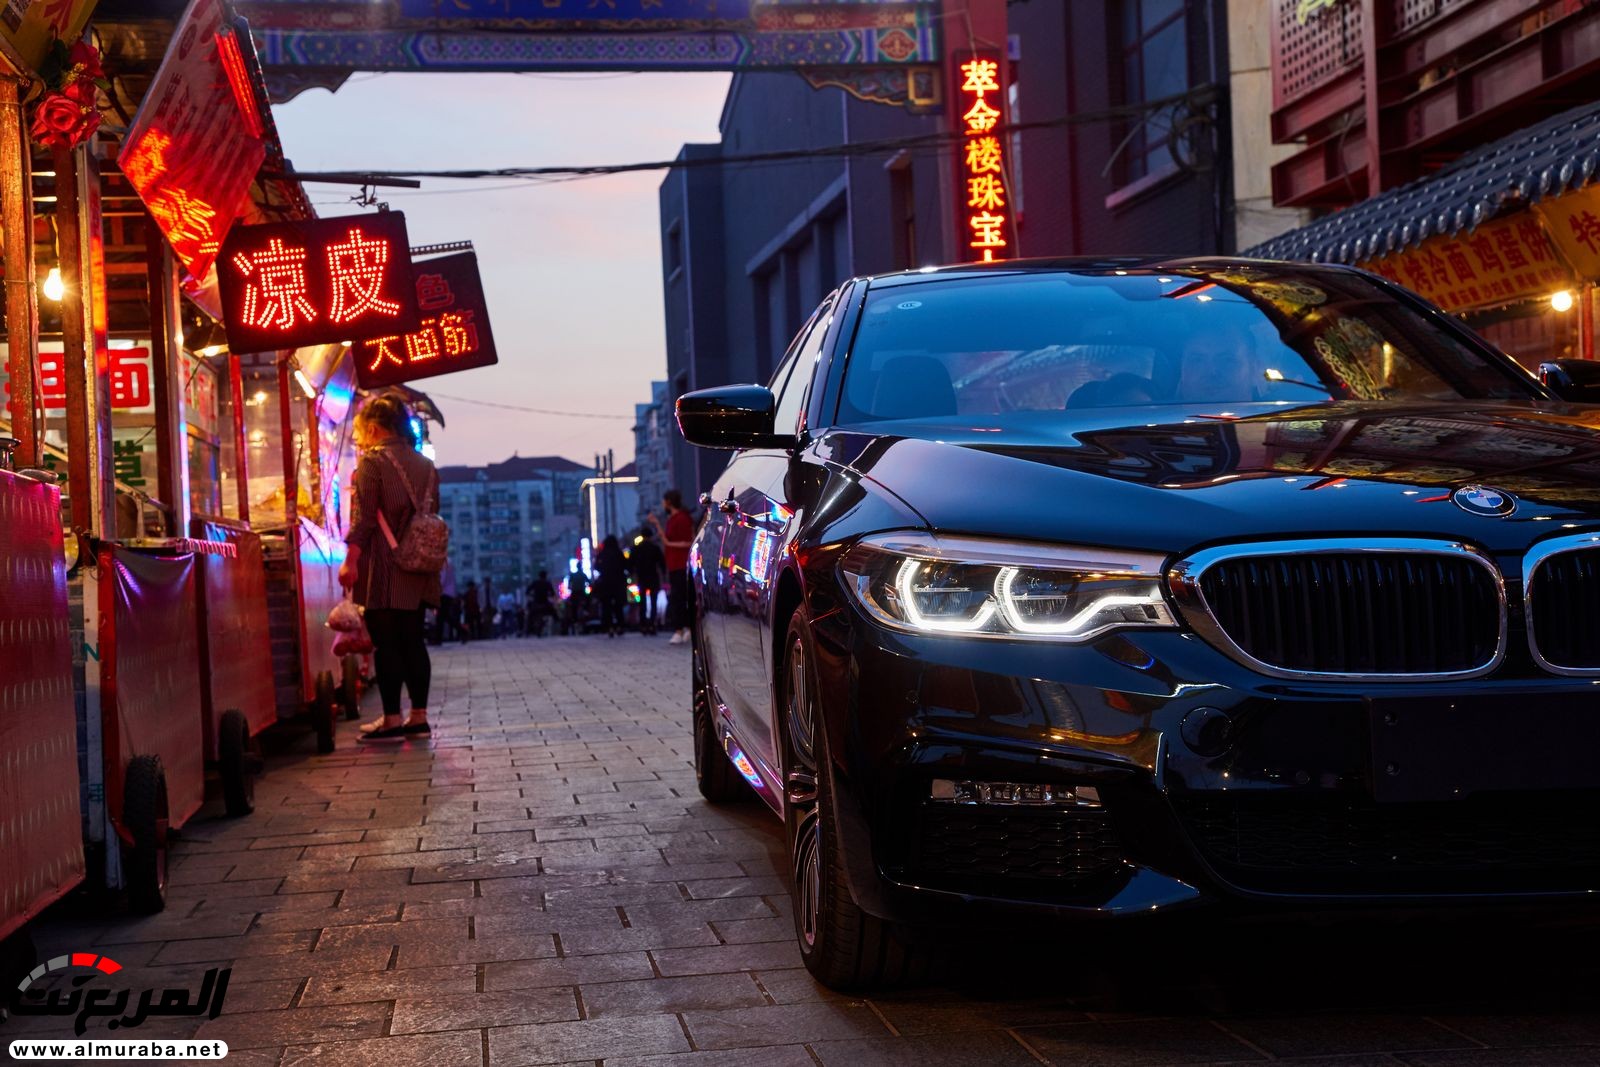 بي إم دبليو أصبحت صانعة السيارات الفاخرة الأكثر مبيعاً في الصين 22